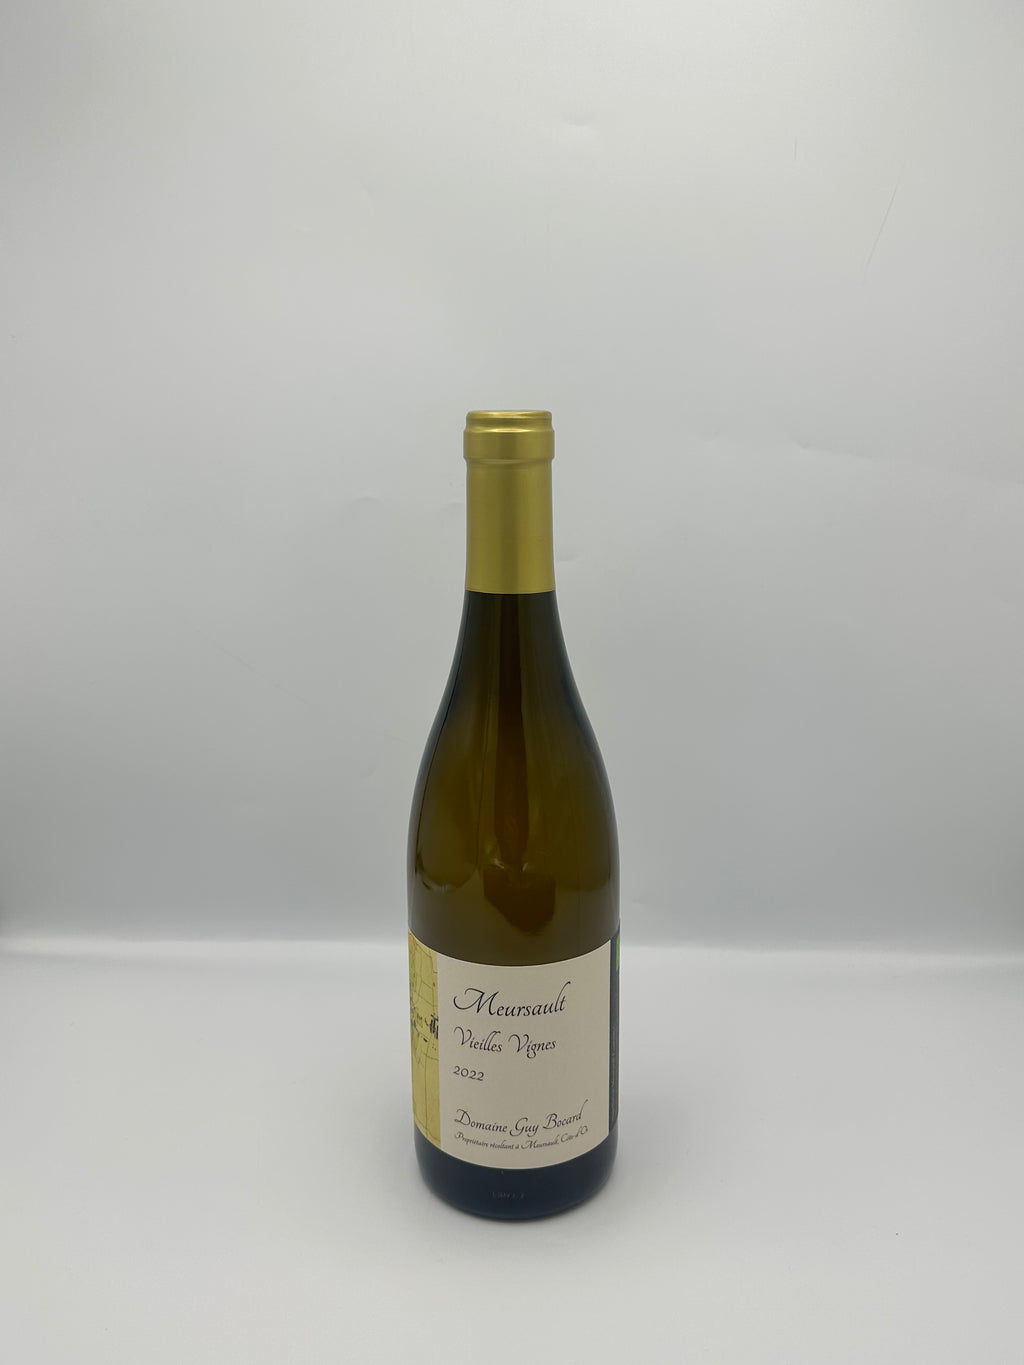 Meursault "Vieilles Vignes" 2022 Blanc - Domaine Guy Bocard